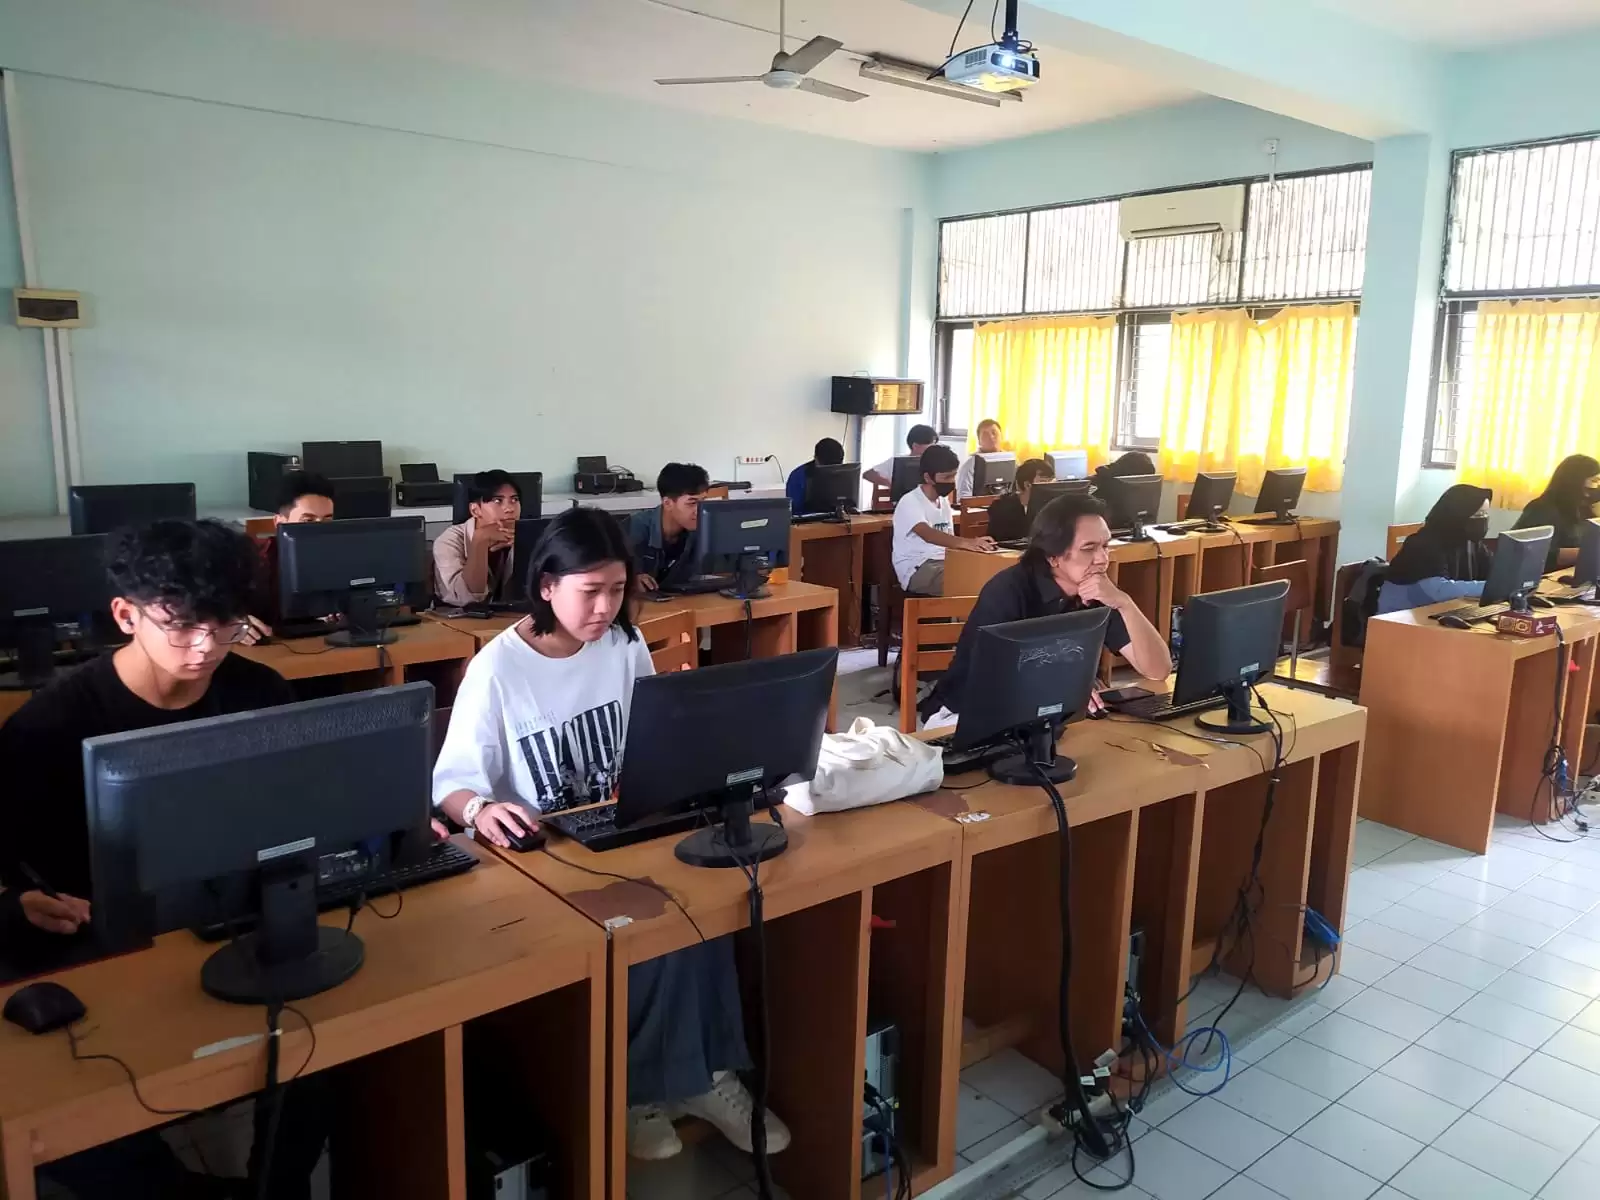 Siswa kelas XI jurusan Animasi, sedang mengerjakan karya materi kelas industri di lab komputer sekolah. (Foto: MI/Gatot Eko Cahyono)